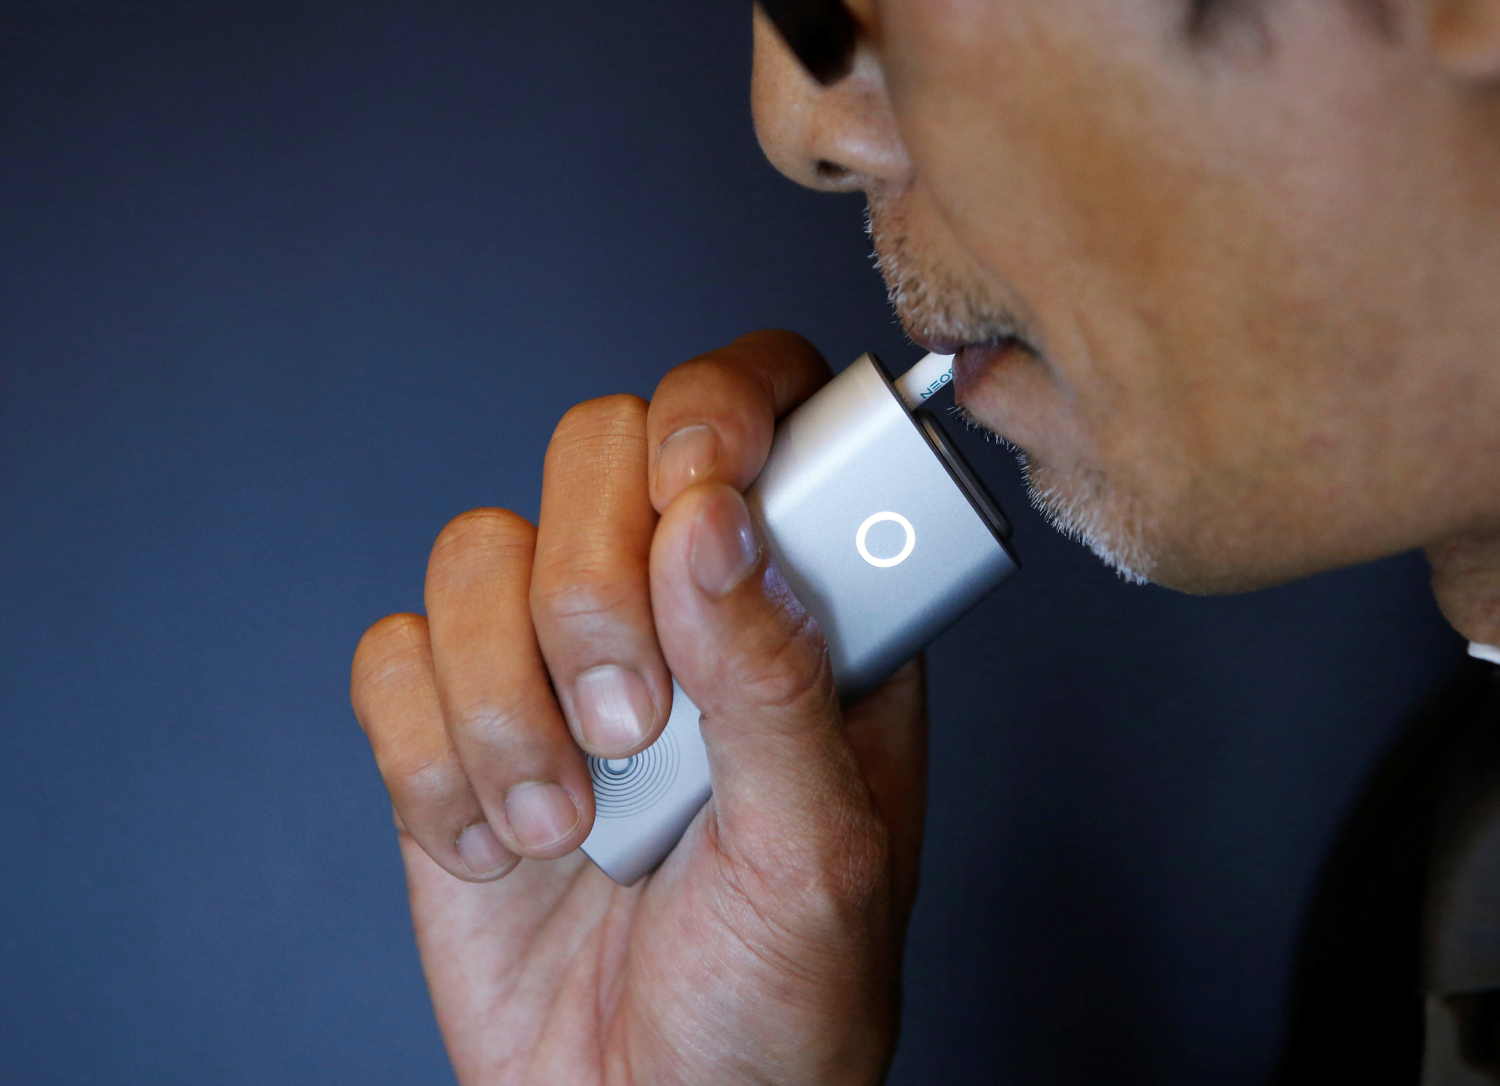 Una tabacalera británica lanza el e-cigarrillo en Japón